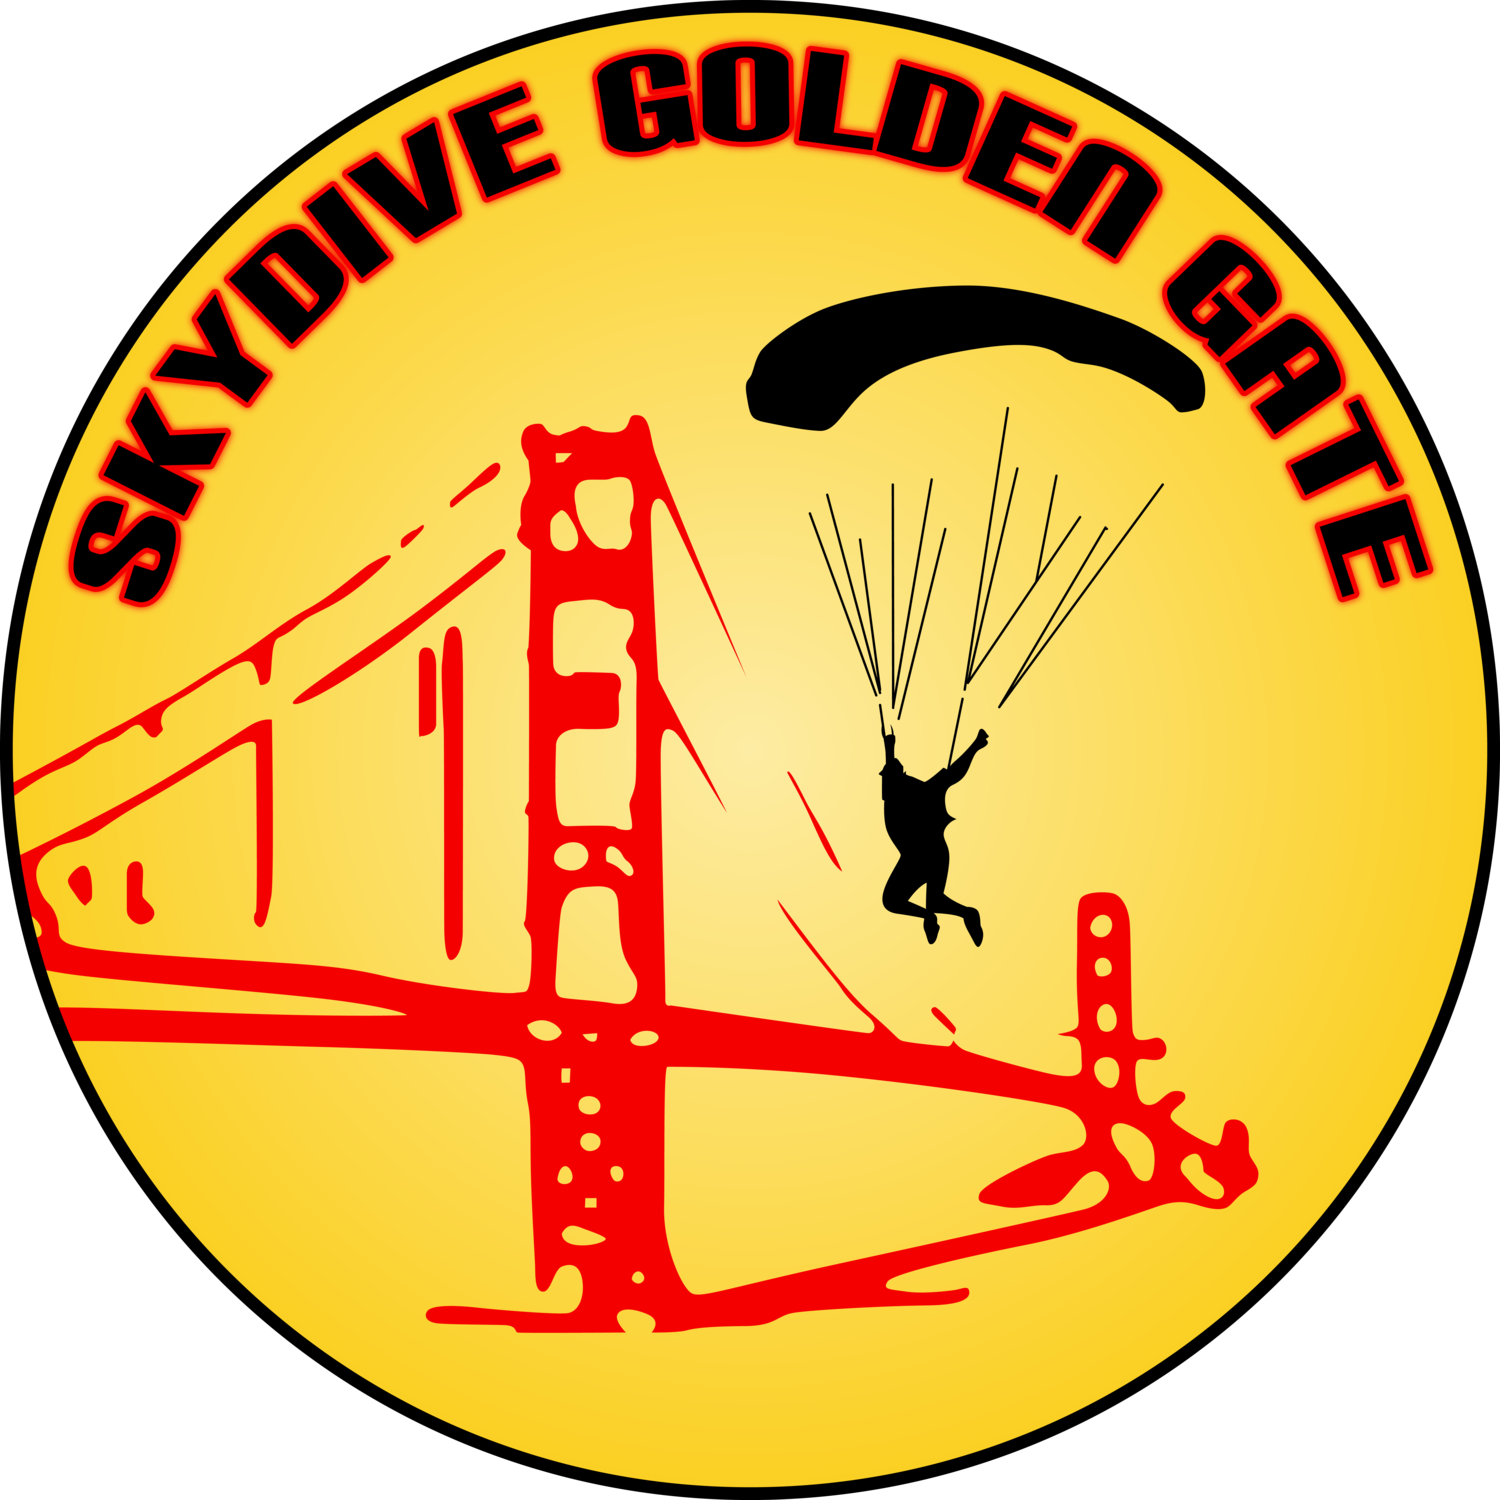 Skydive Golden Gate